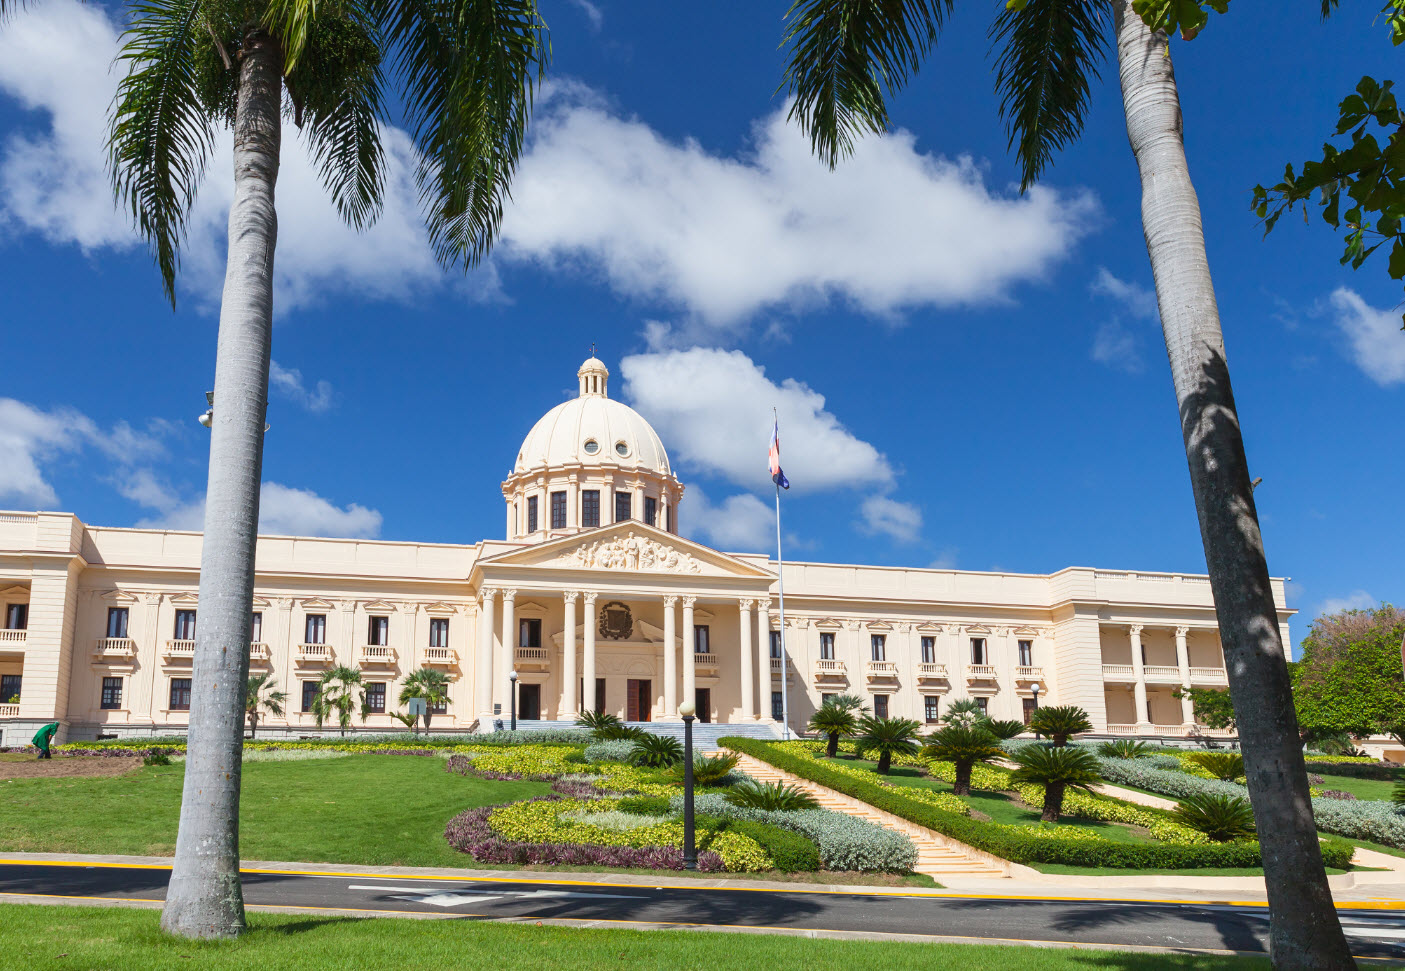 Cuál es la capital de república dominicana